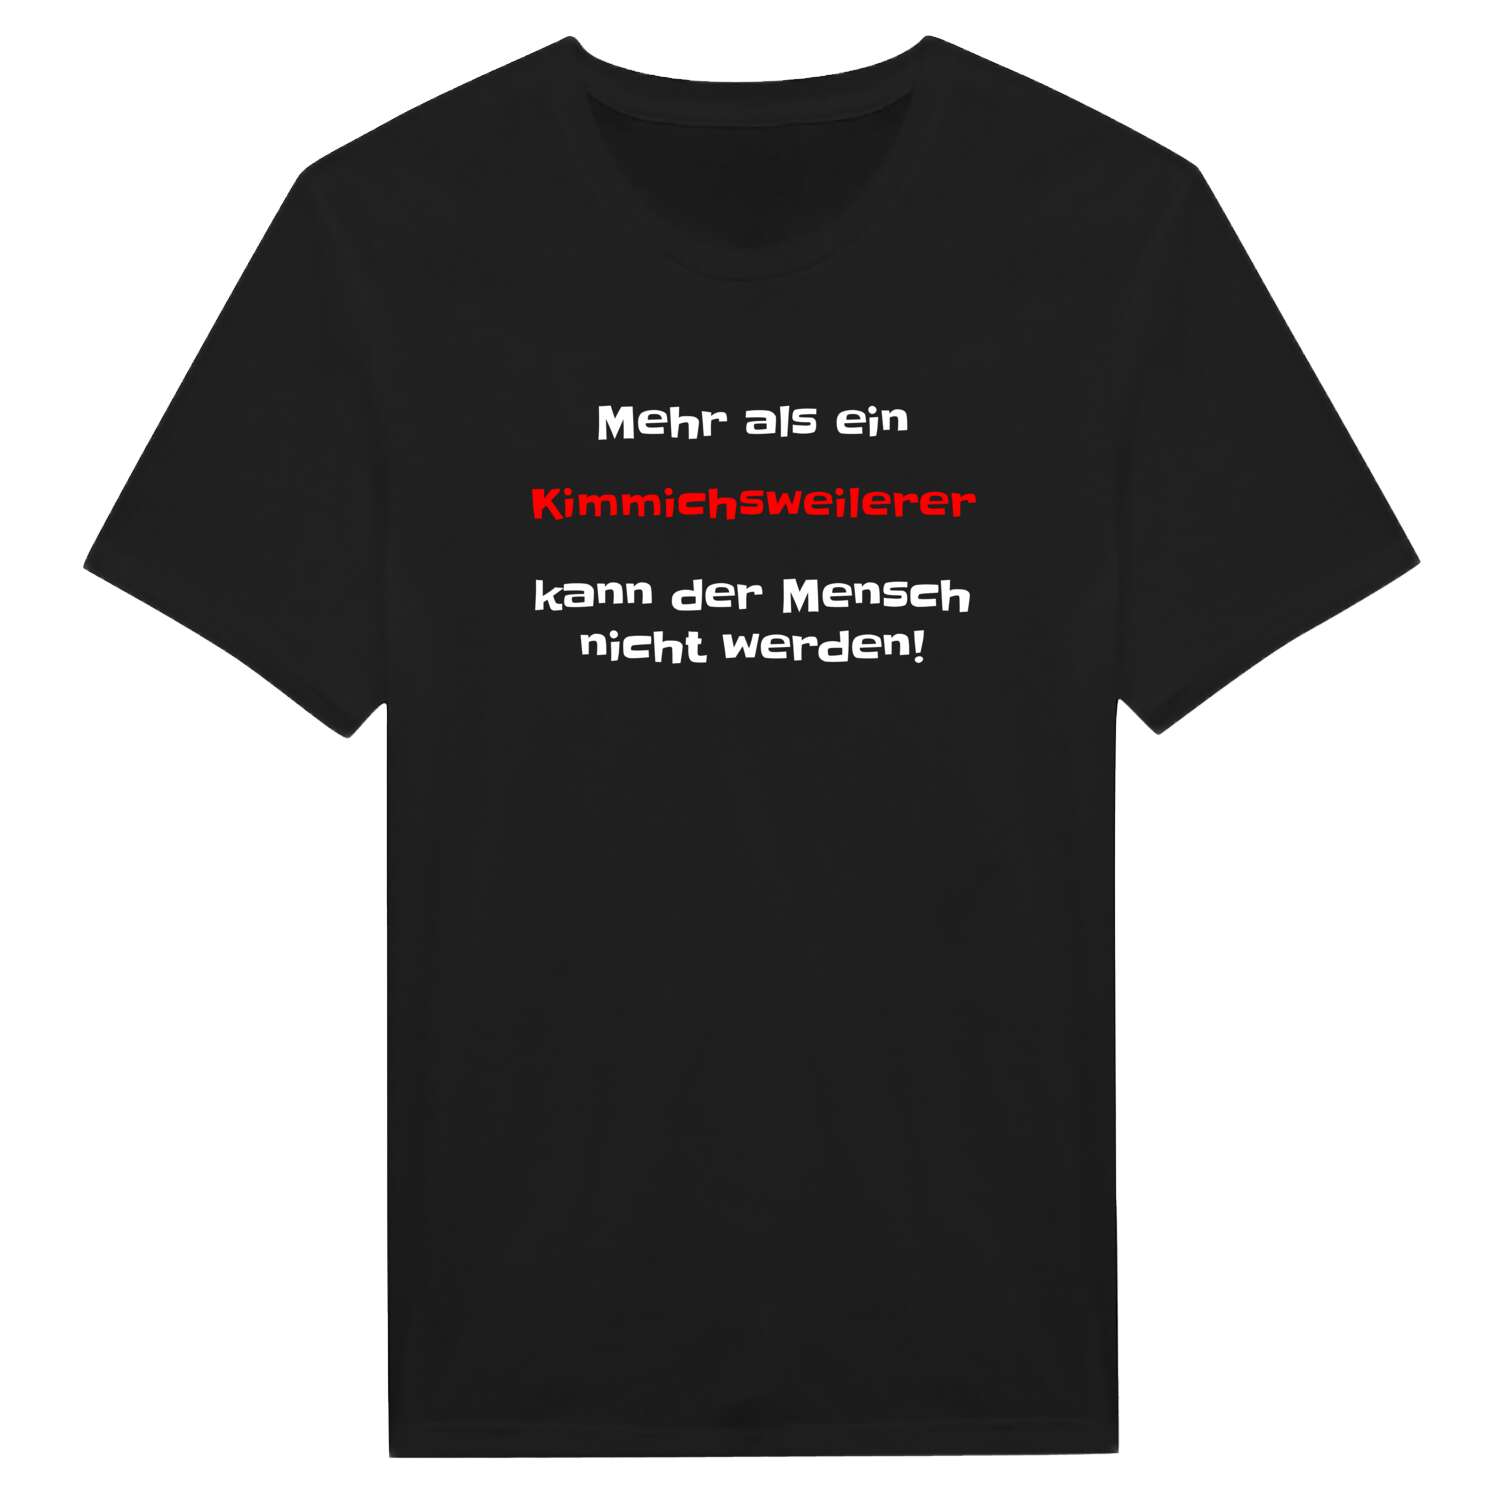 Kimmichsweiler T-Shirt »Mehr als ein«